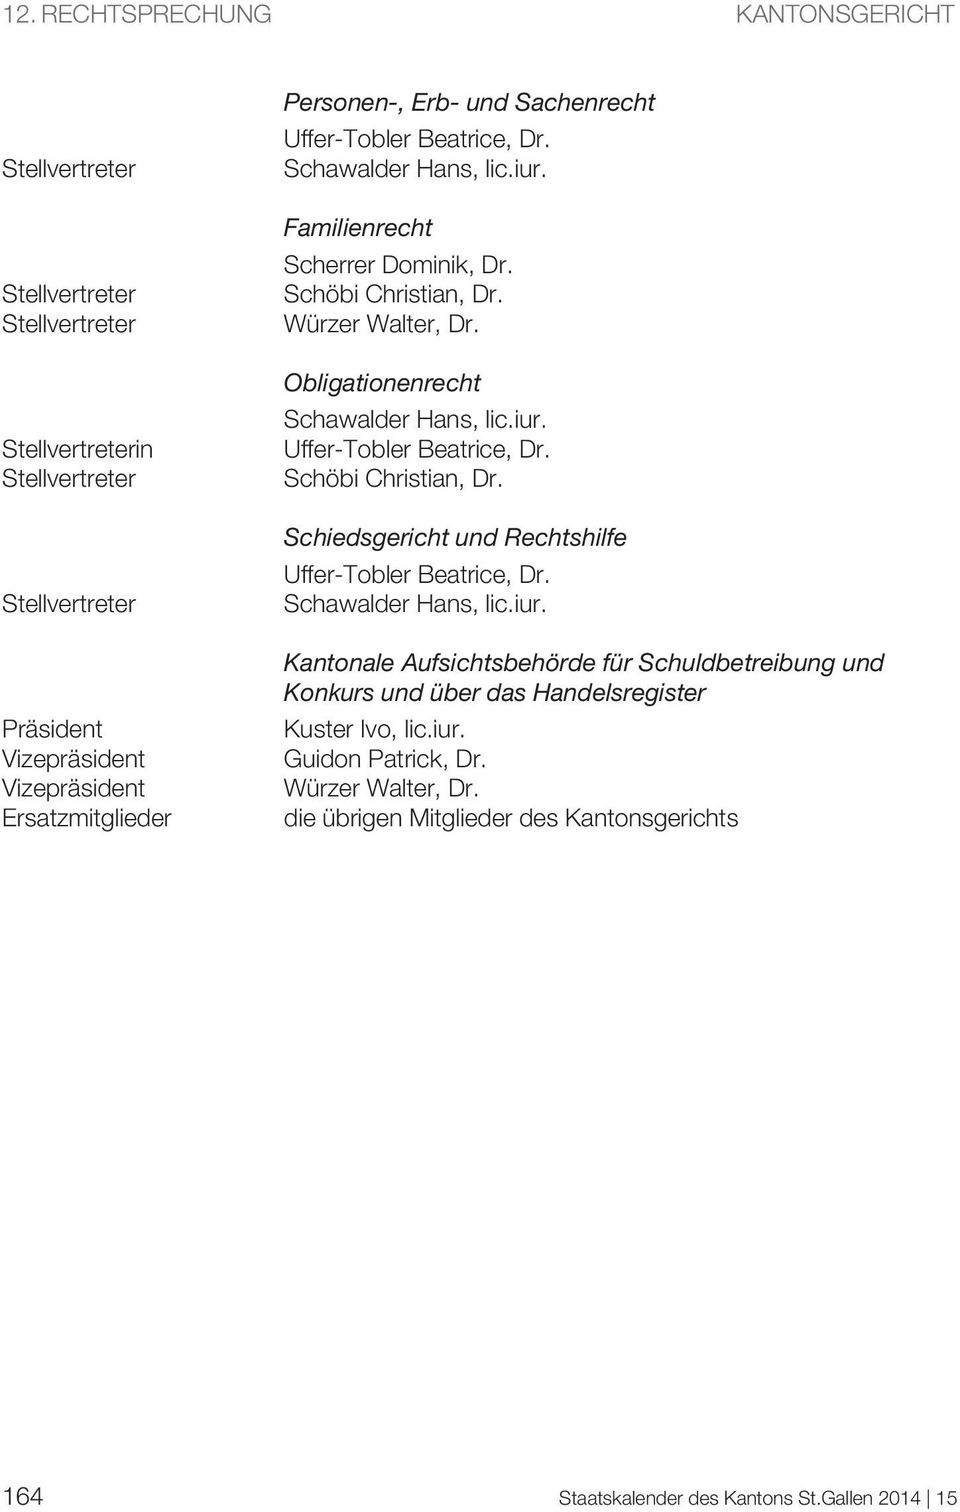 Schöbi Christian, Dr. Schiedsgericht und Rechtshilfe Uffer-Tobler Beatrice, Dr. Schawalder Hans, lic.iur.